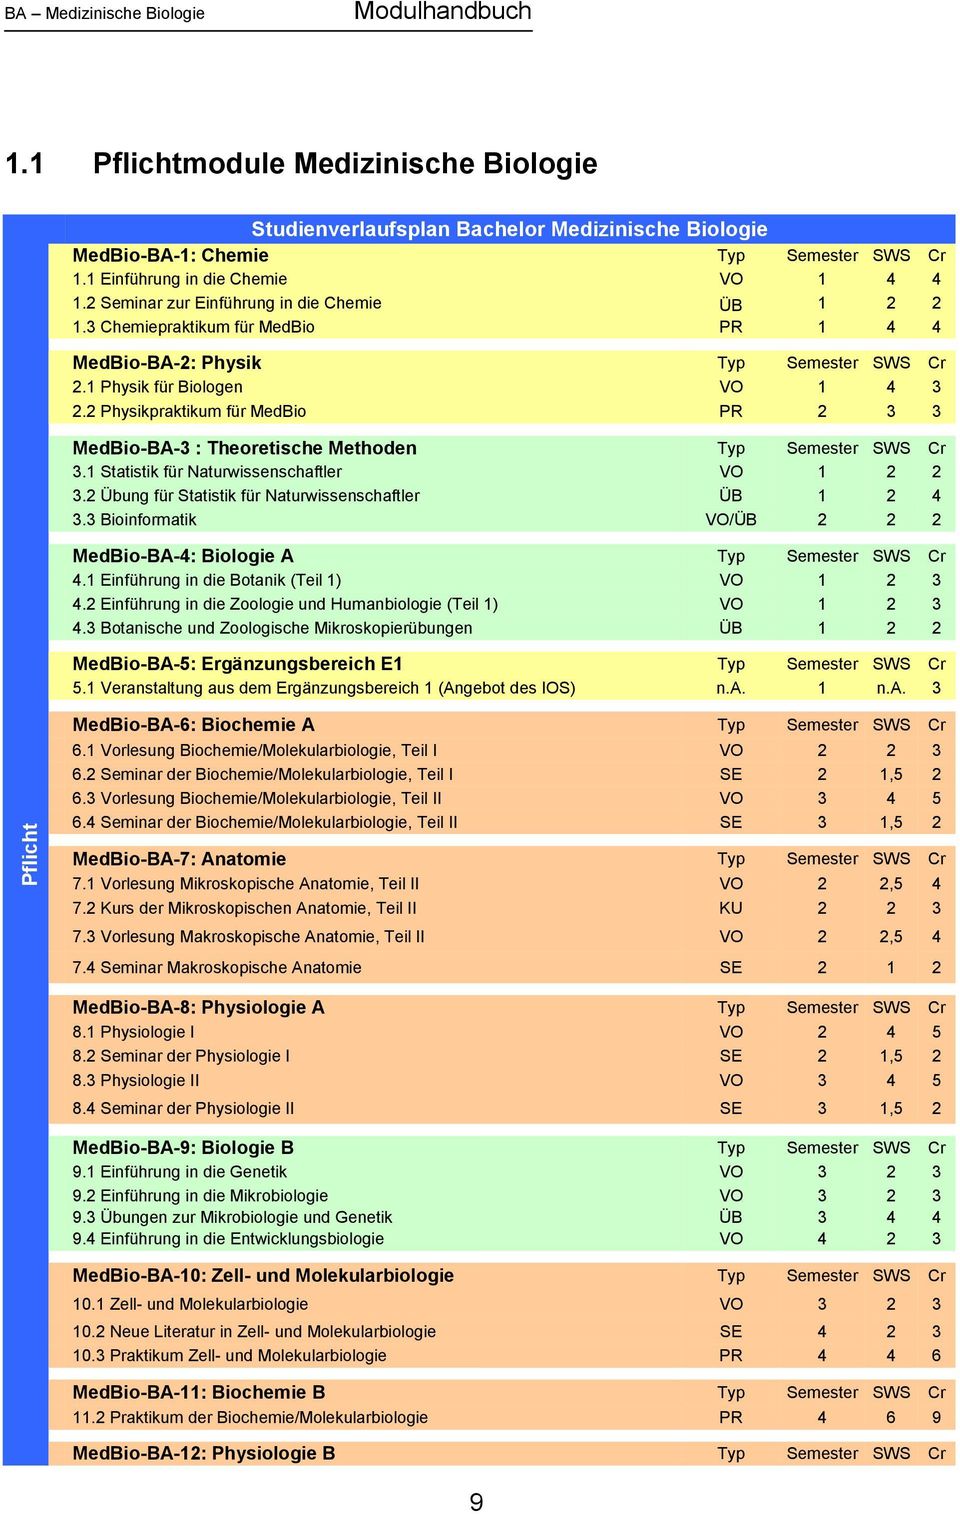 2 Physikpraktikum für MedBio PR 2 3 3 MedBio-BA-3 : Theoretische Methoden Typ Semester SWS Cr 3.1 Statistik für Naturwissenschaftler VO 1 2 2 3.